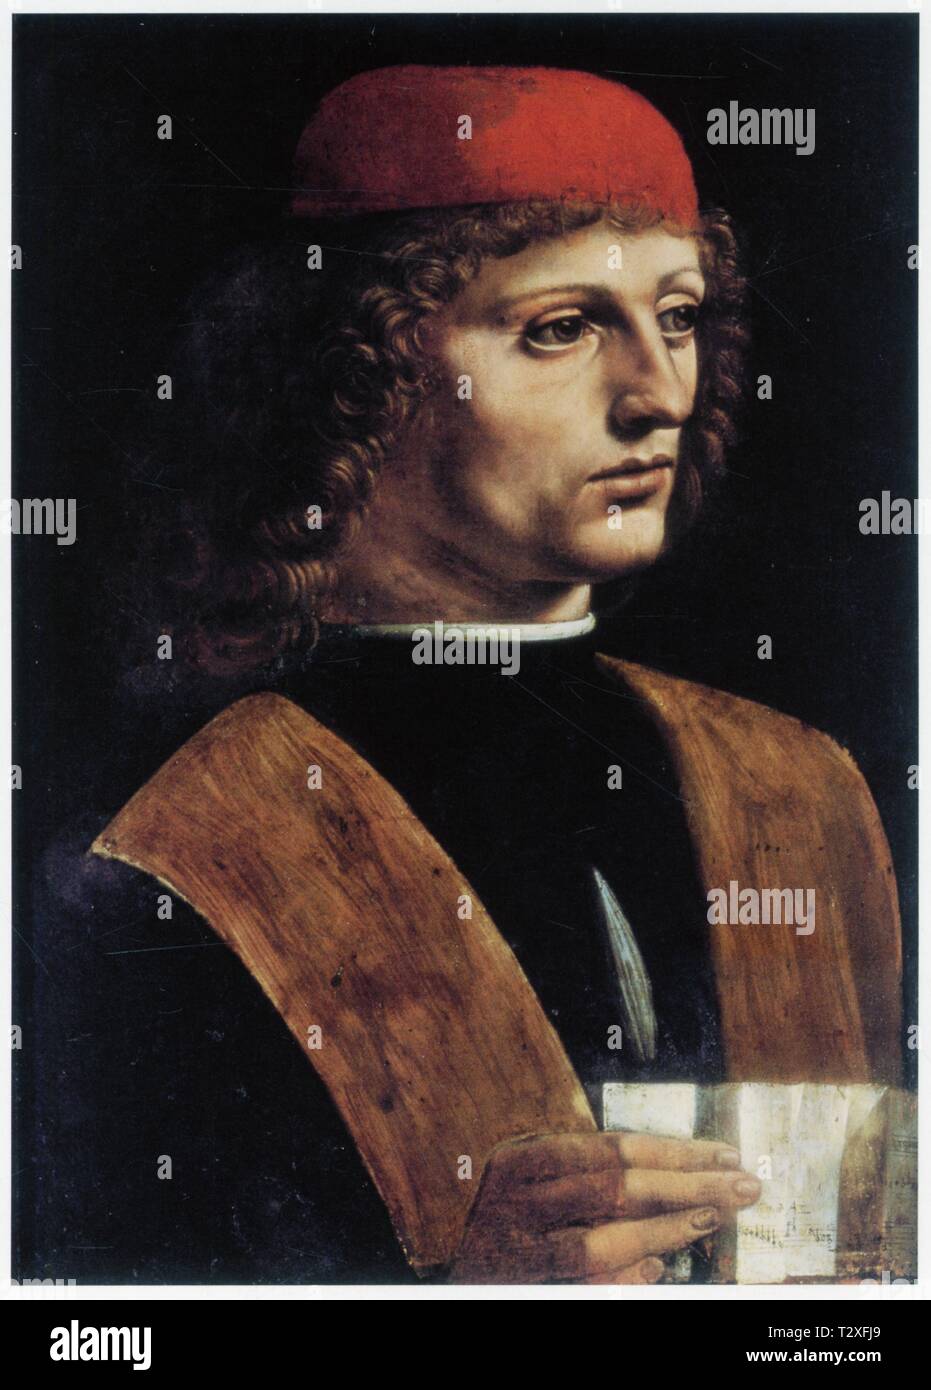 LÉONARD DE VINCI. PORTRAIT D'UN JEUNE HOMME. 1490. HUILE SUR BOIS. 44,7 CM X 32 CM Banque D'Images